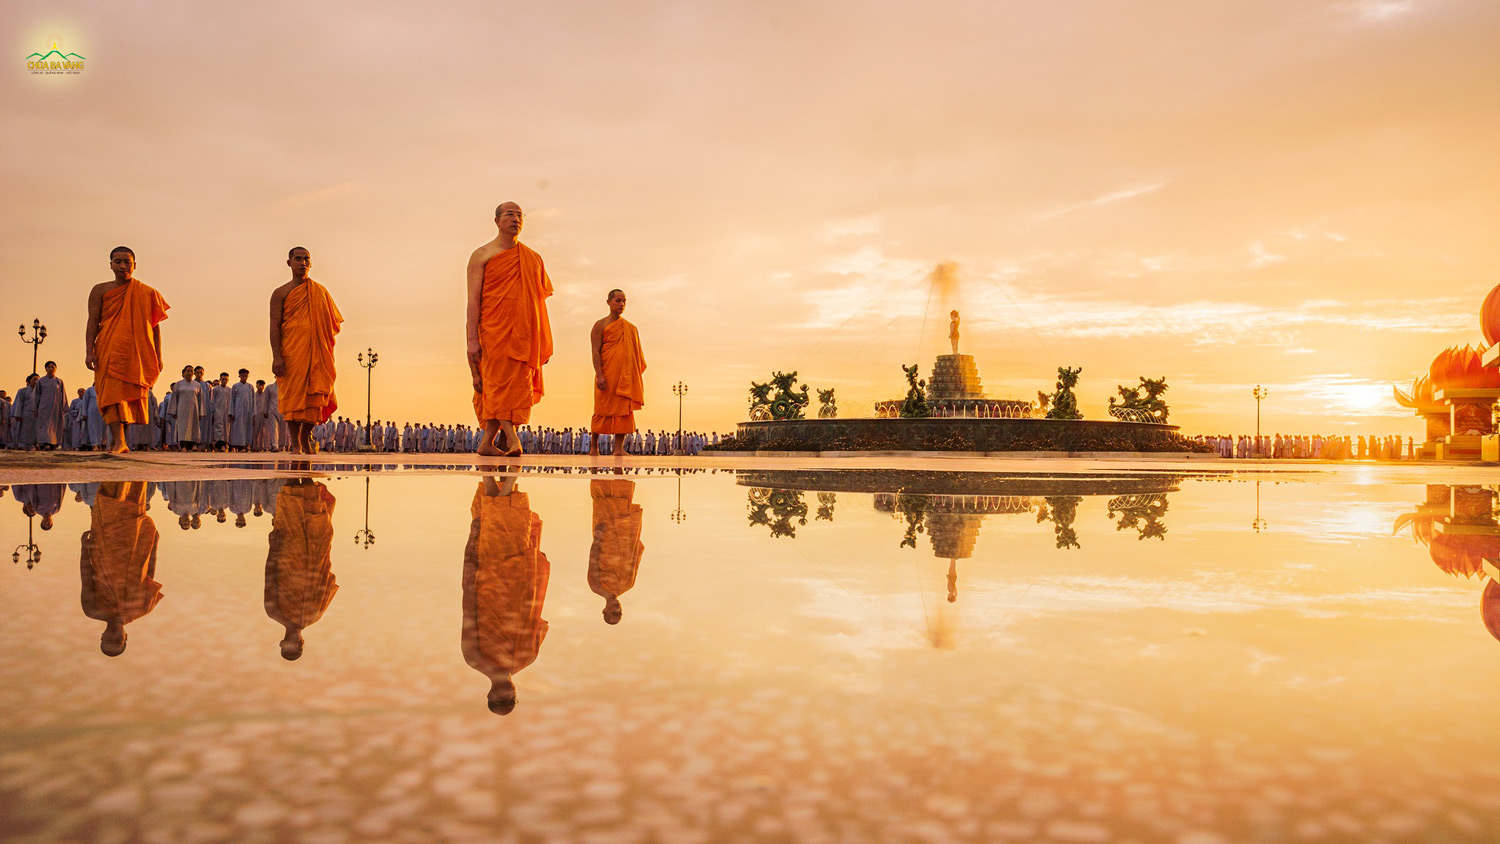 Buổi chiều ngày thứ 4 của Khóa tu thiền 7 ngày, Sư Phụ Thích Trúc Thái Minh cùng chư Tăng đã trực tiếp hướng dẫn Phật tử công quả tại chùa thiền hành xung quanh khuôn viên bổn tự